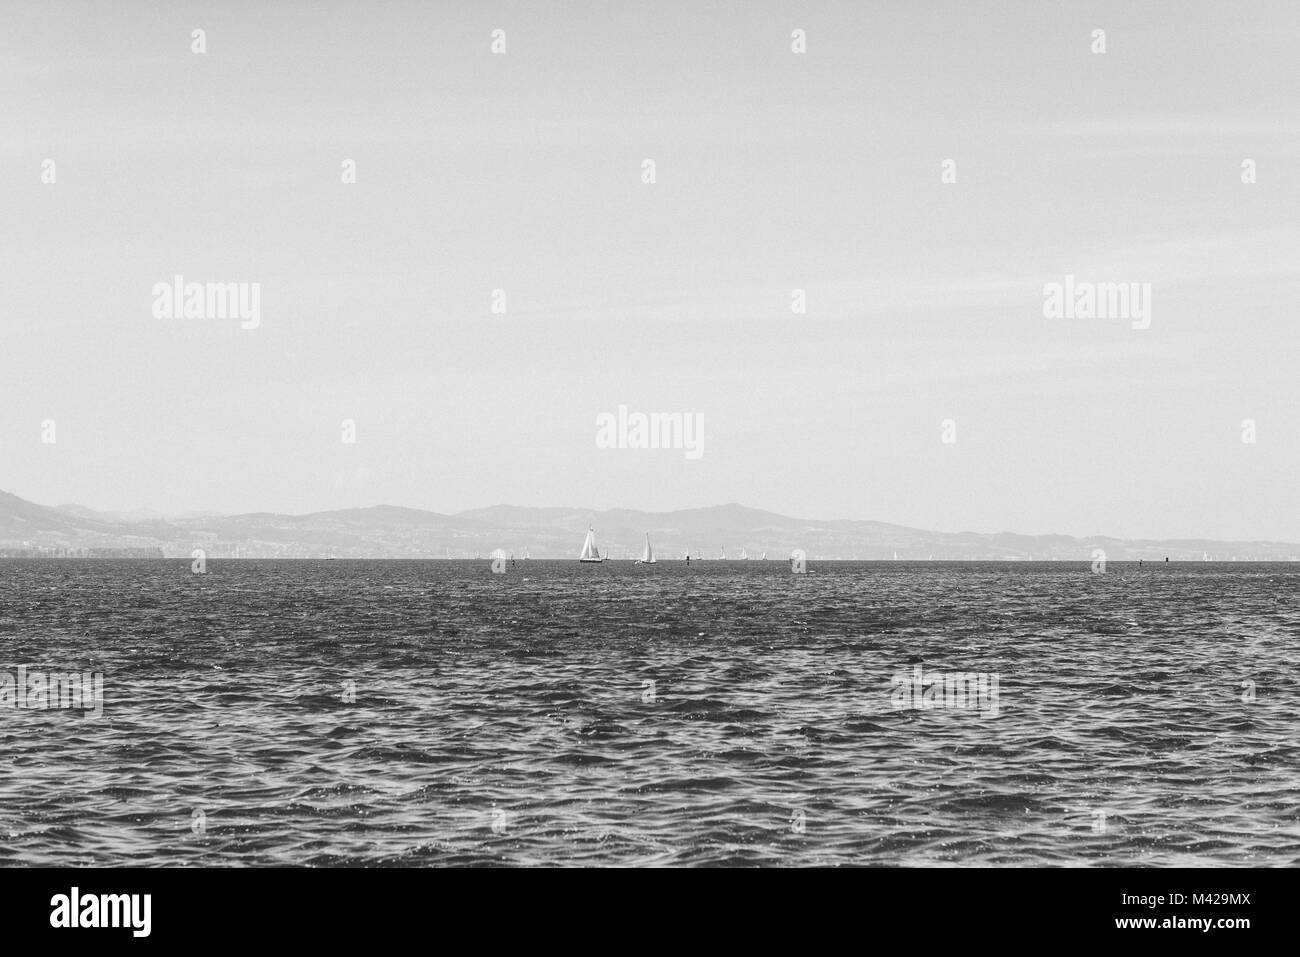 Immagine in bianco e nero presi in Lindau in Germania. Una bella immagine orizzontale del Bodensee con alcune barche a vela all'orizzonte. Foto Stock